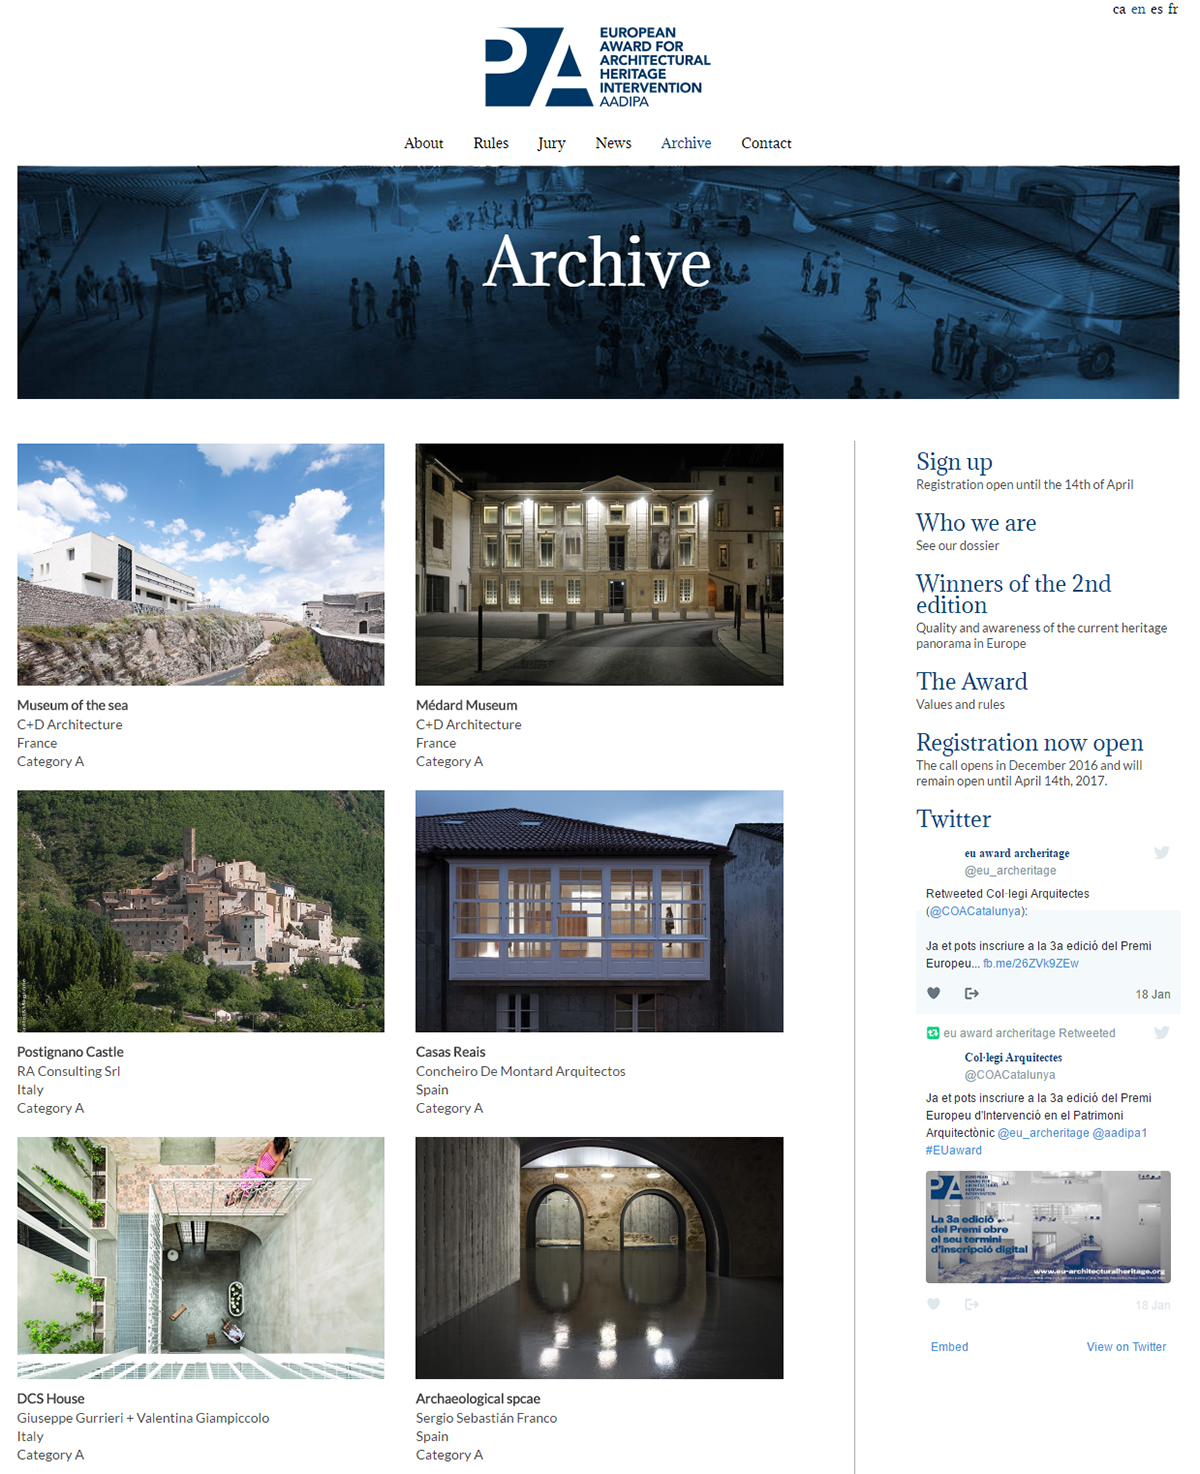 Archives relatives à l’intervention sur le patrimoine architectural européen